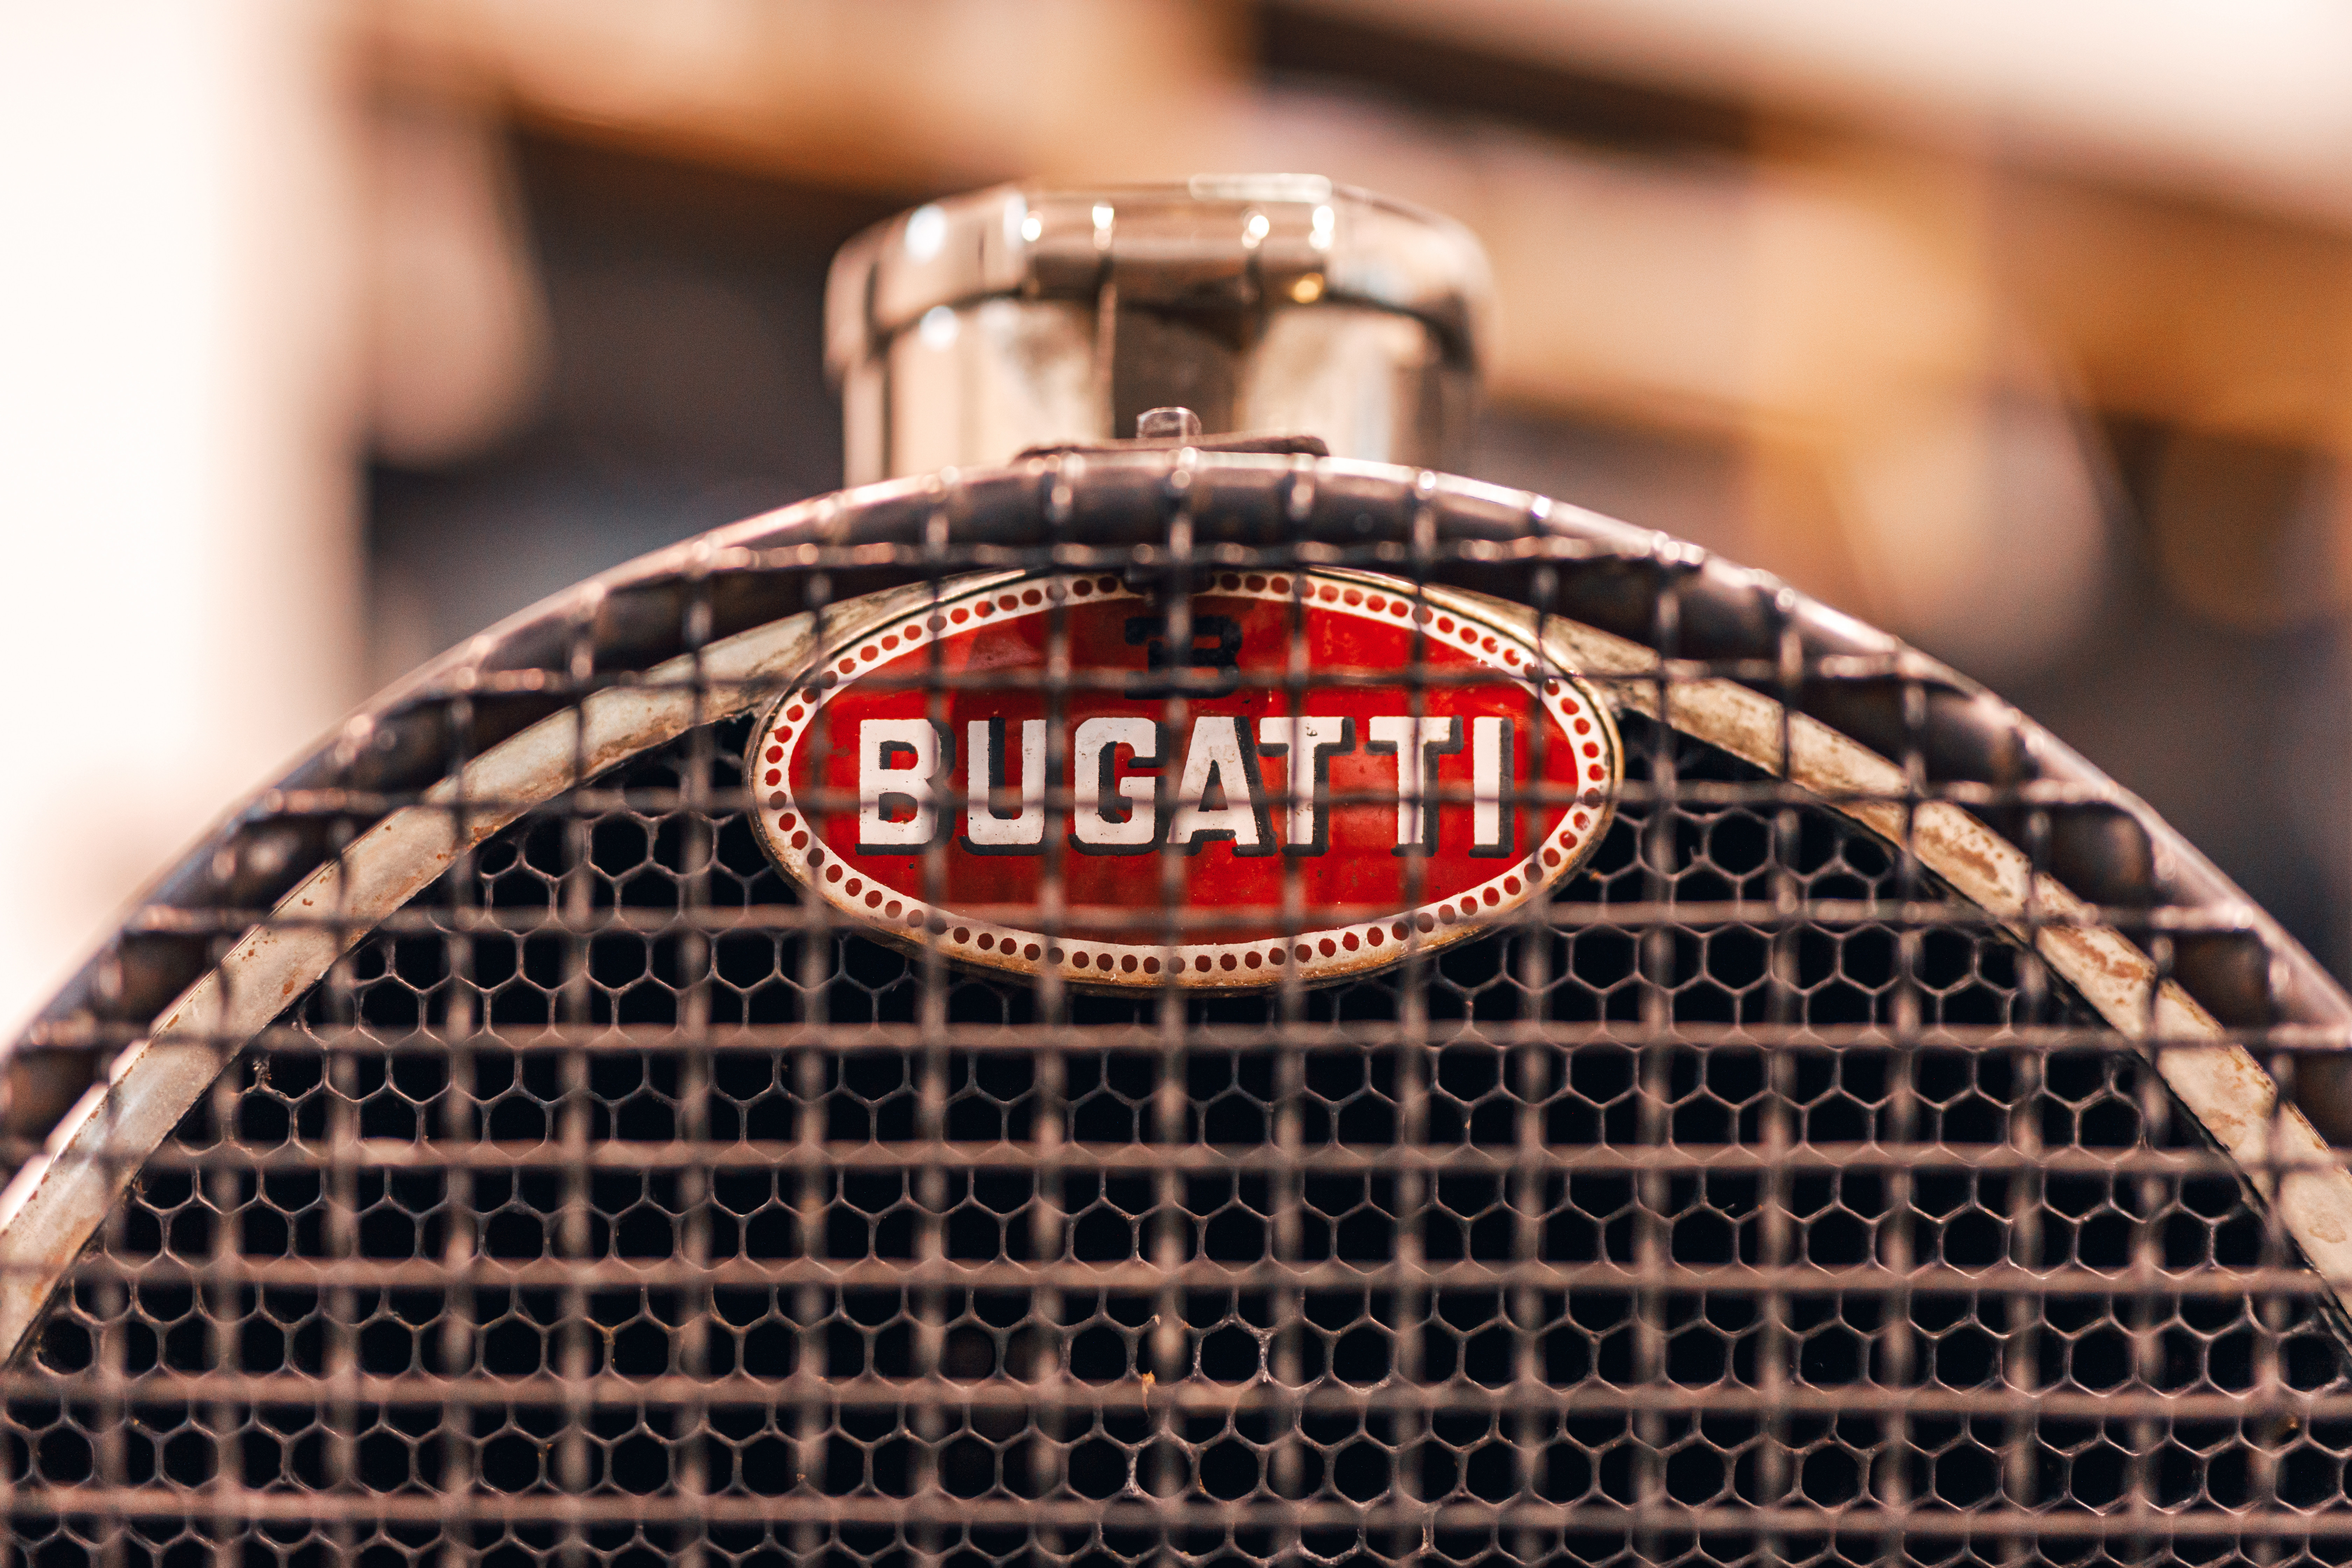 Bugatti signe des chaussures de foot en édition limitée